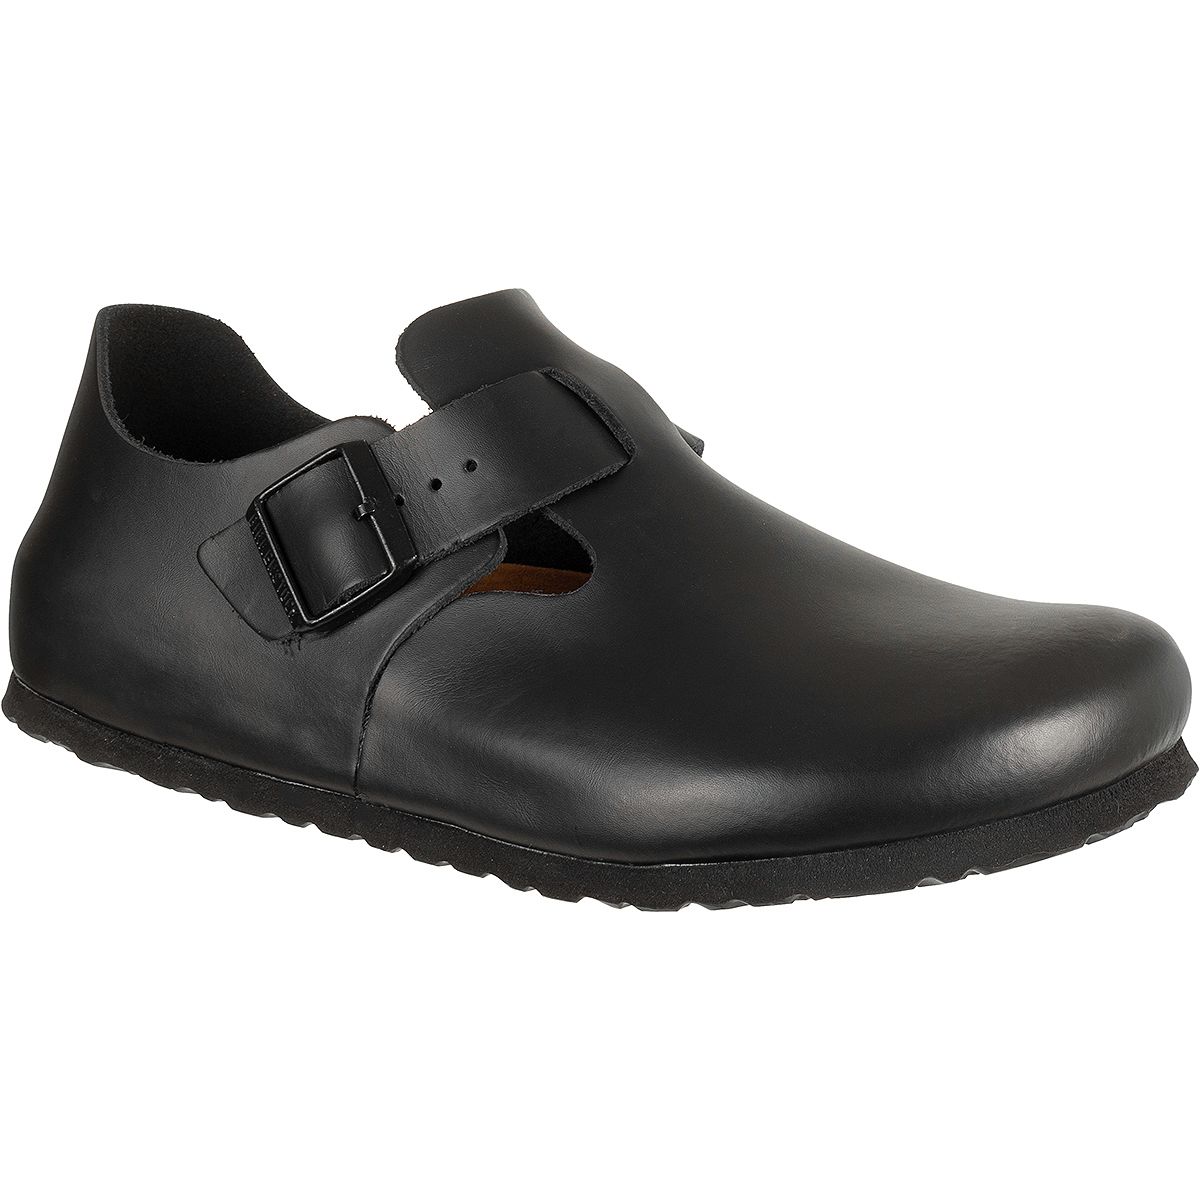 Birkenstock London Soft Footbed Leather Shoe - Men's - Footwear